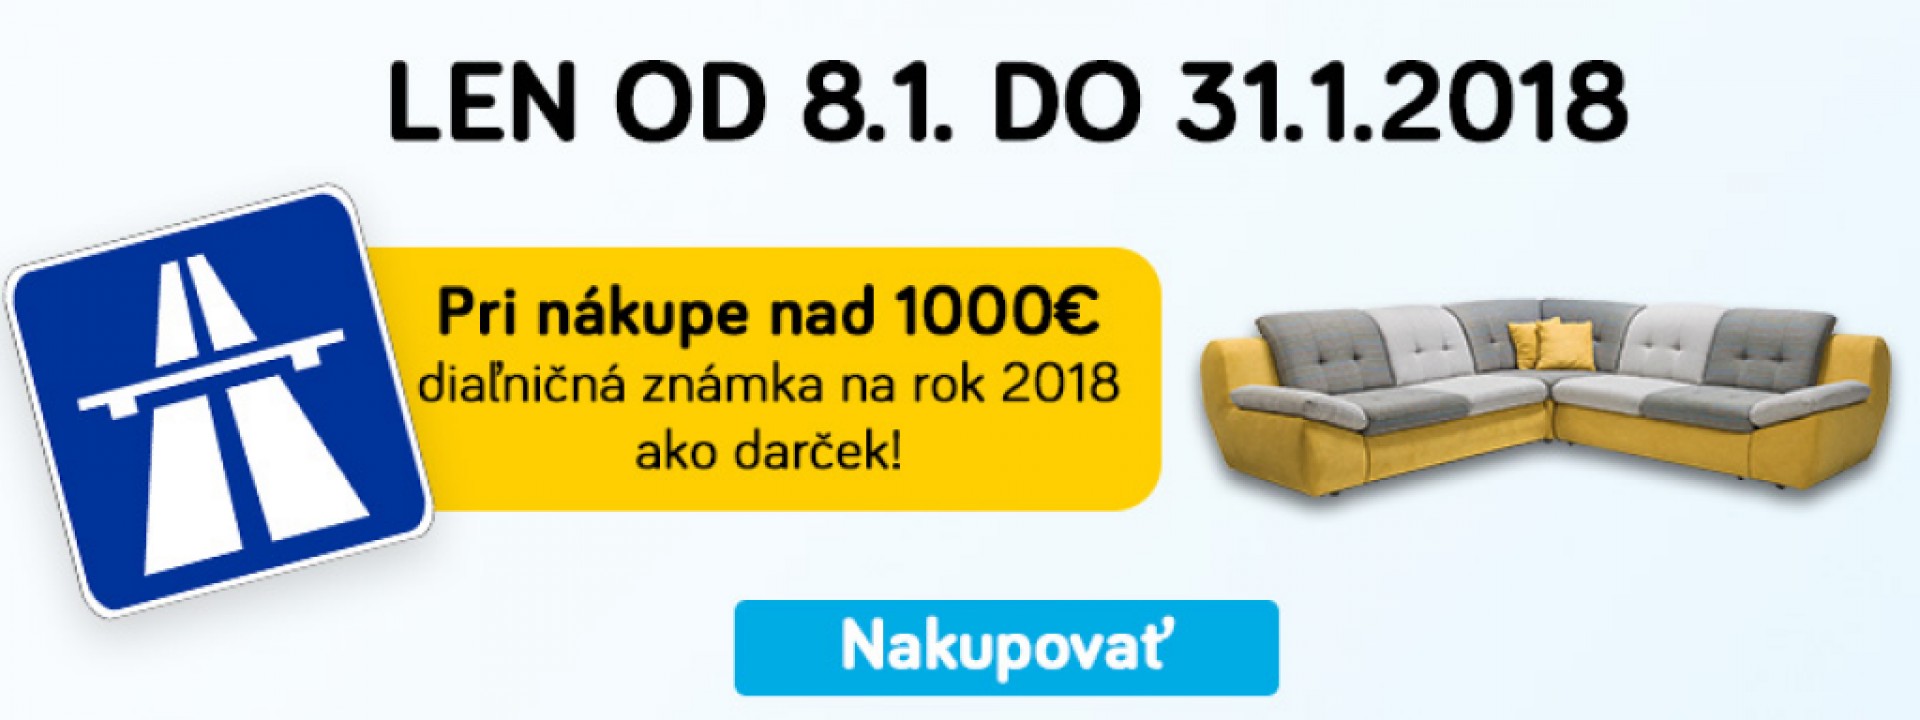 Pri nákupe nad 1000€ diaľničná známka na rok 2018 ako darček!